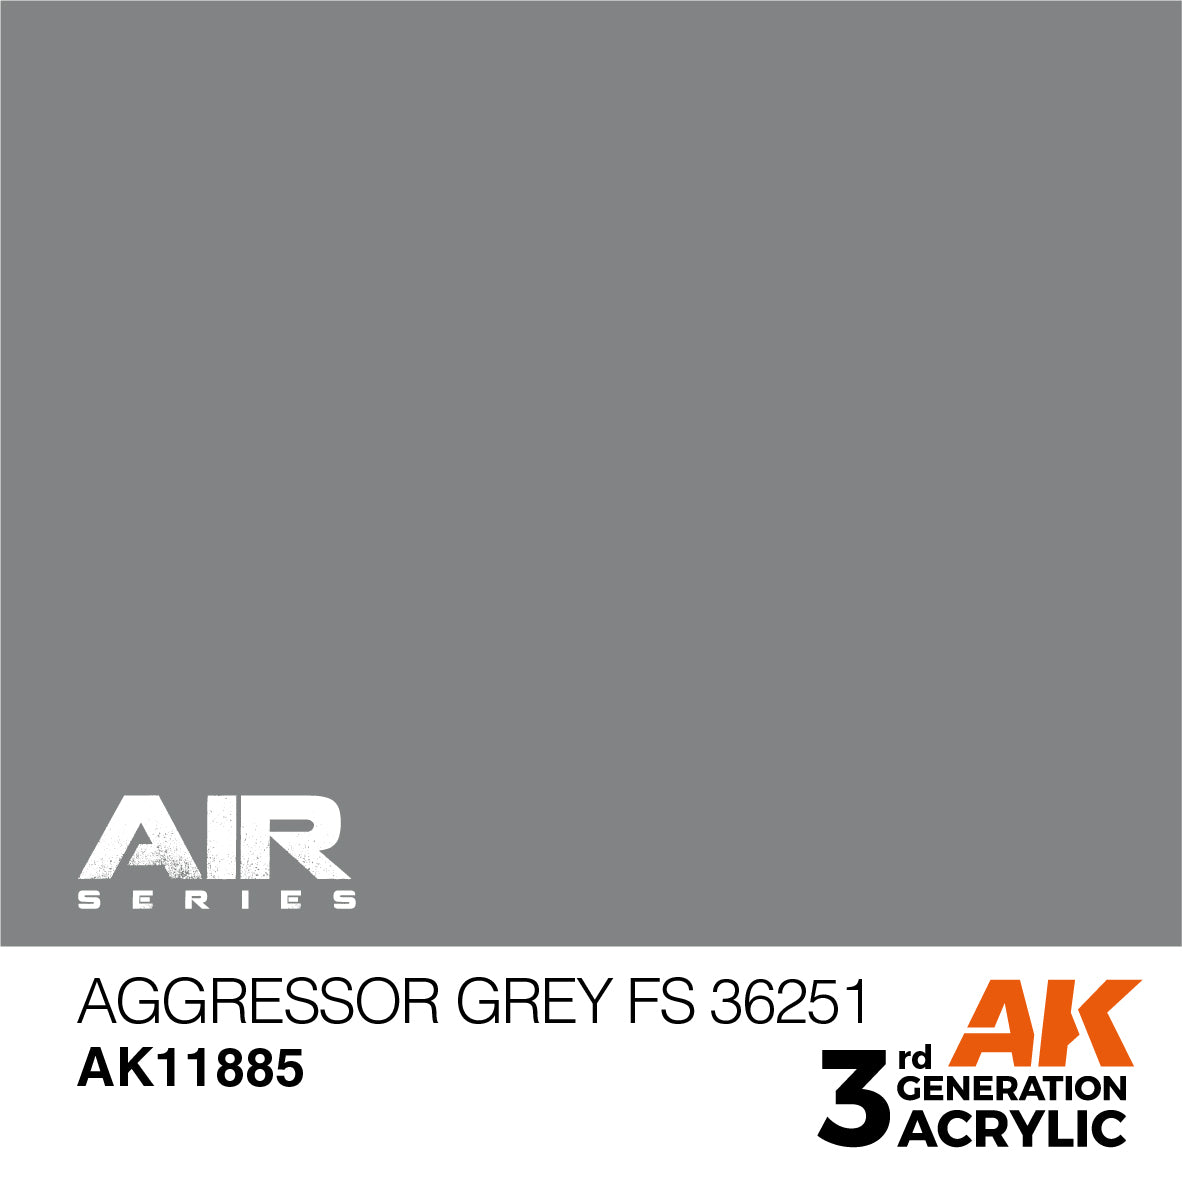 Aggressor Grey FS 36251 - Loaded Dice Barry Vale of Glamorgan CF64 3HD